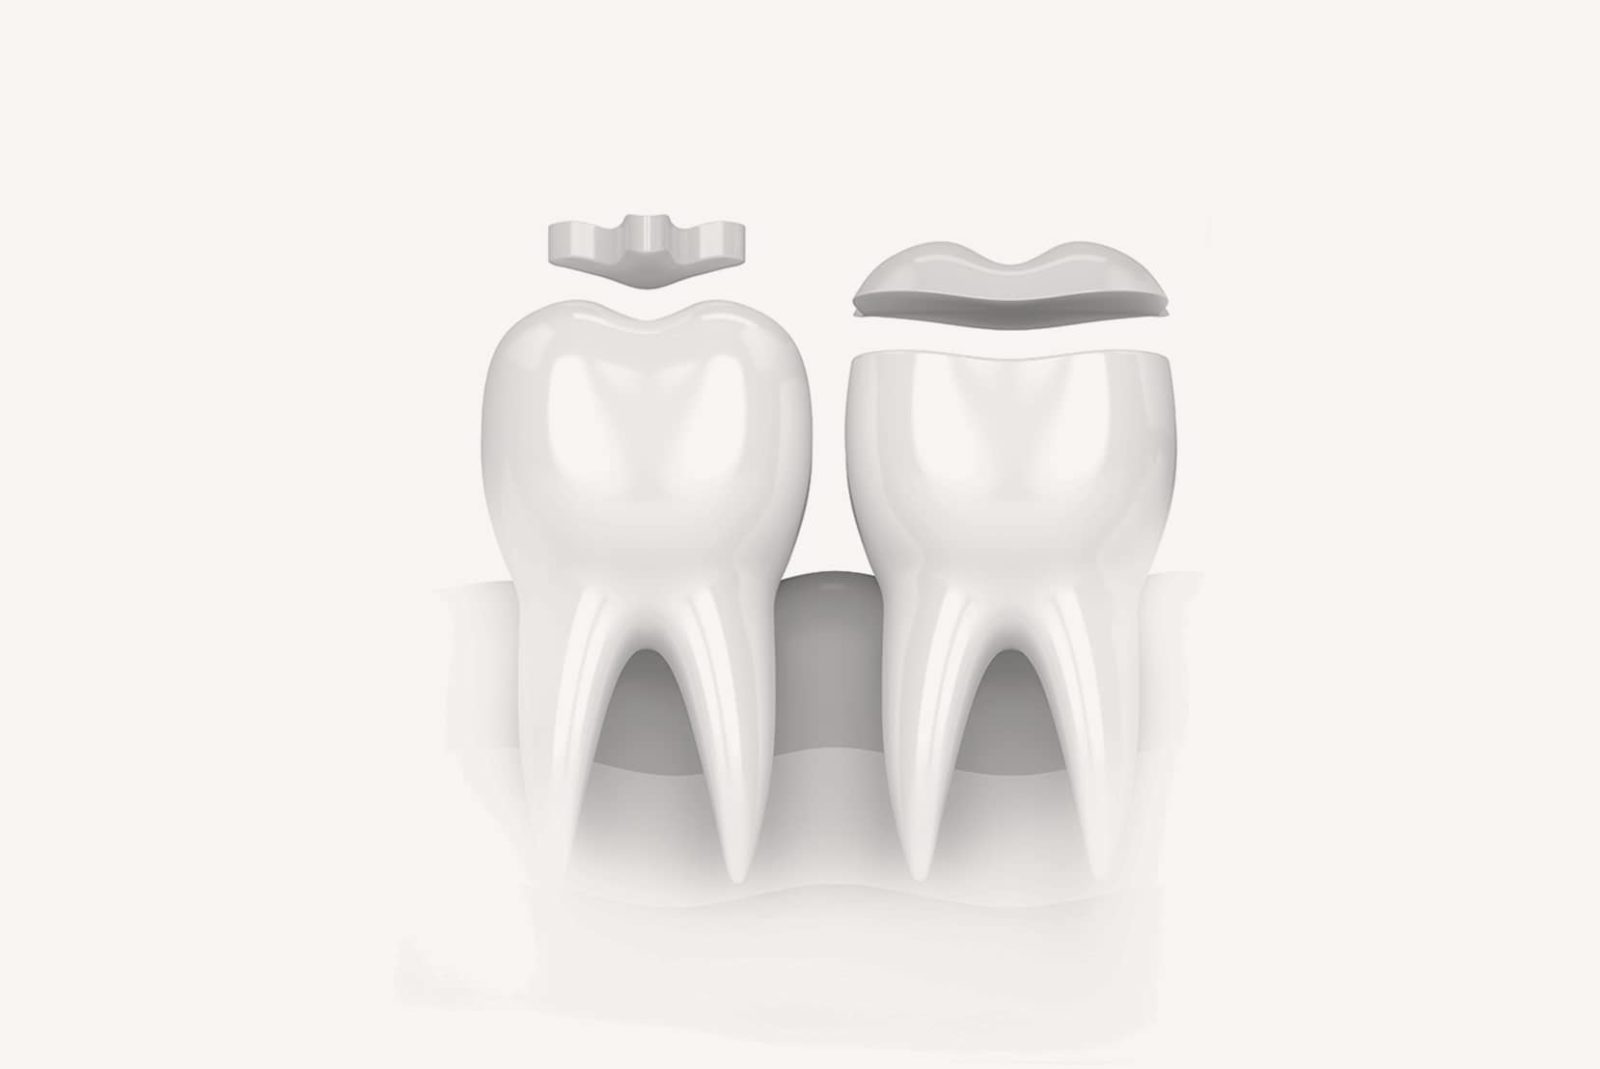 Inlays Onlays pour traiter vos problèmes dentaires à Lyon - Dr Serge Sobol